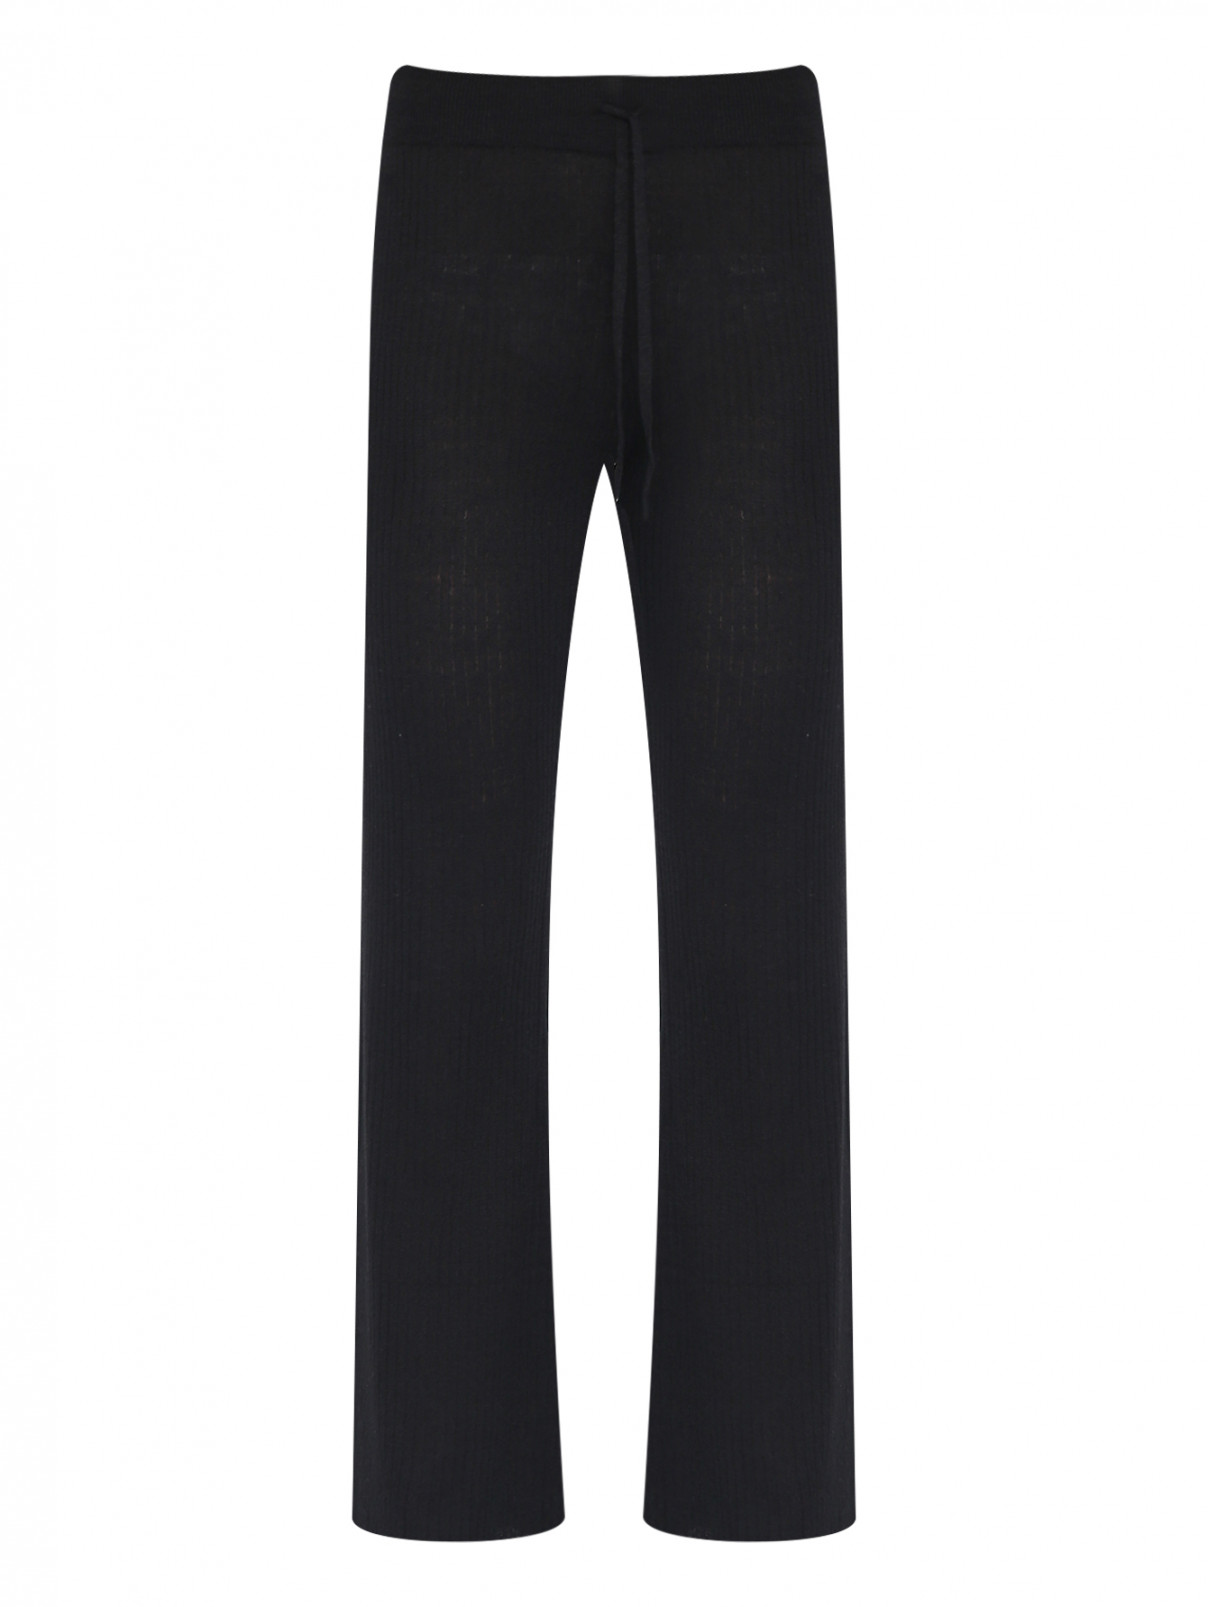 Трикотажные брюки из льна DEHA  –  Общий вид  – Цвет:  Черный